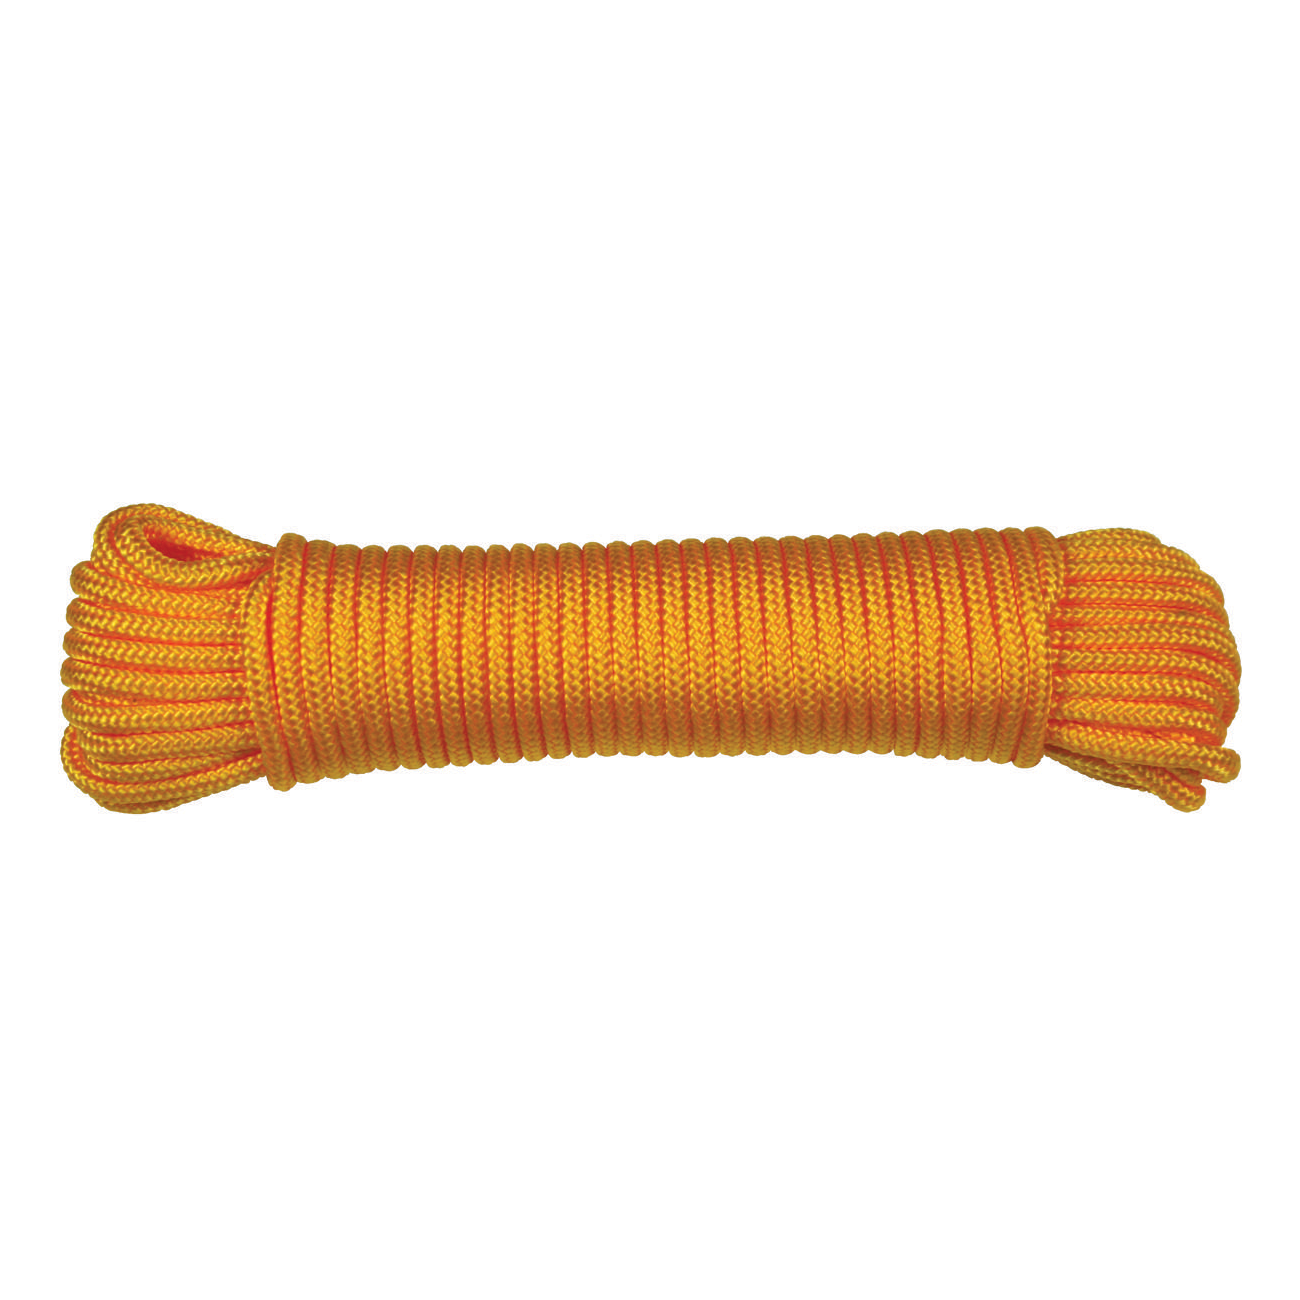 5/32"x45' Braided Rope, Orange